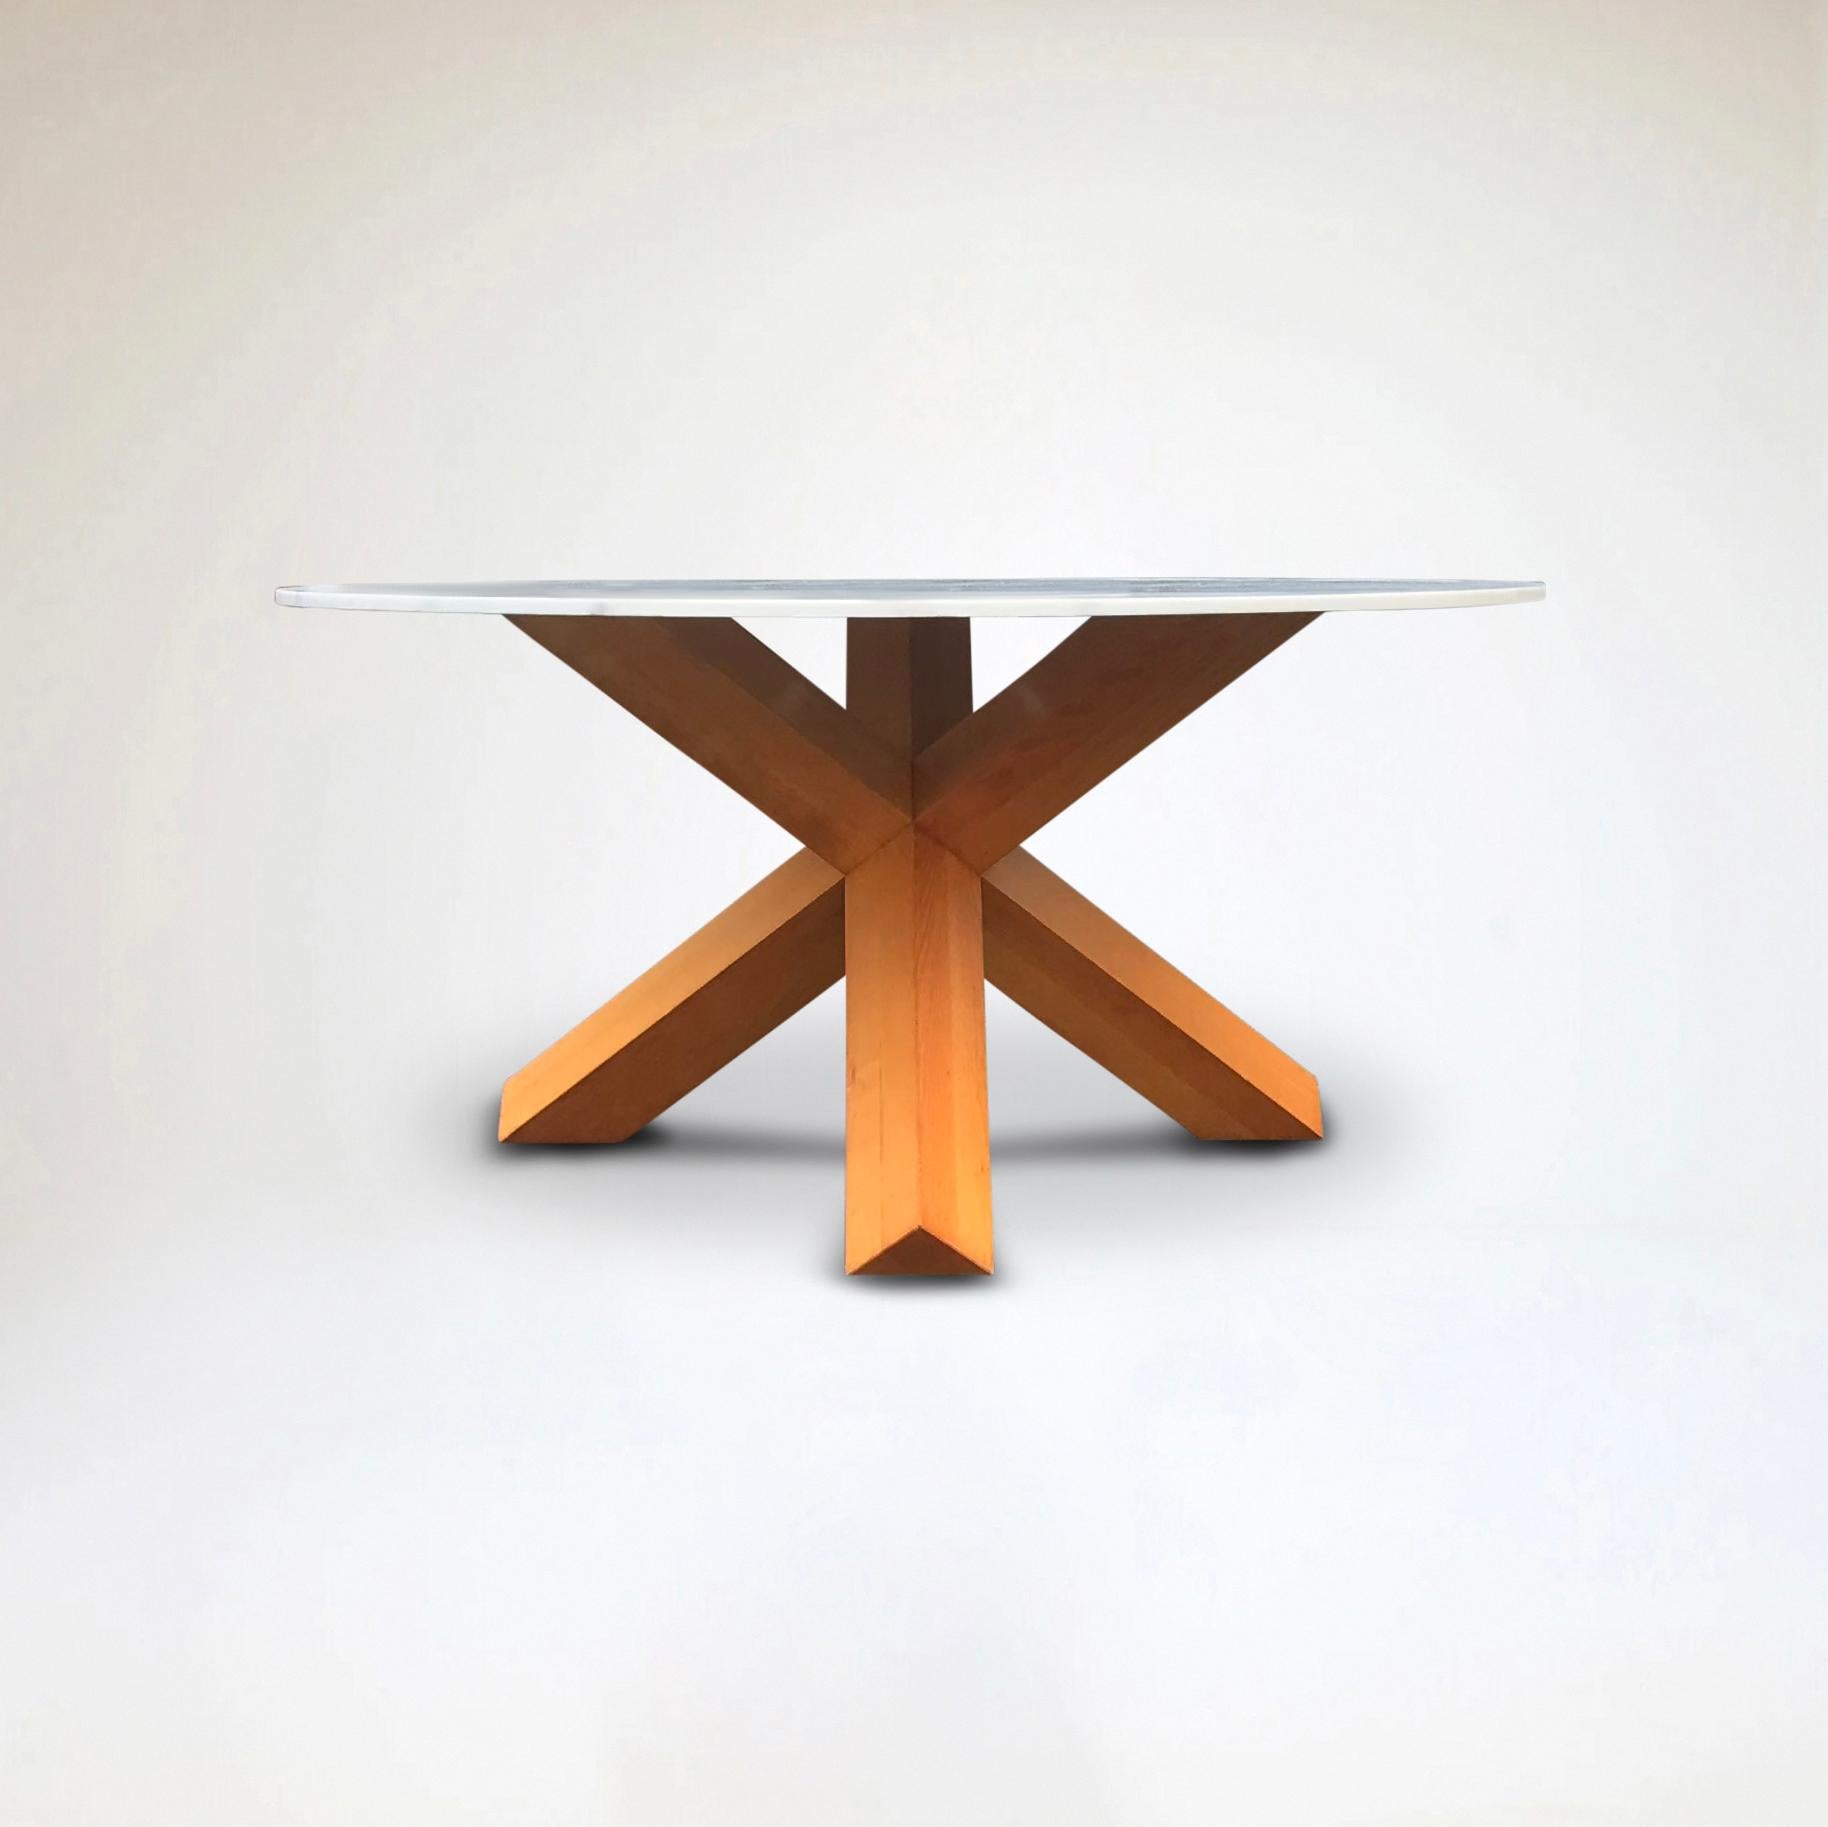 Der 1976 von Mario Bellini entworfene Tisch La Rotonda hat einen einfachen, skulpturalen Sockel, eine diagonale Kreuzung aus drei Beinen mit quadratischem Querschnitt, die eine runde, 165 cm lange Tischplatte trägt, die durch starke, direkt aus dem